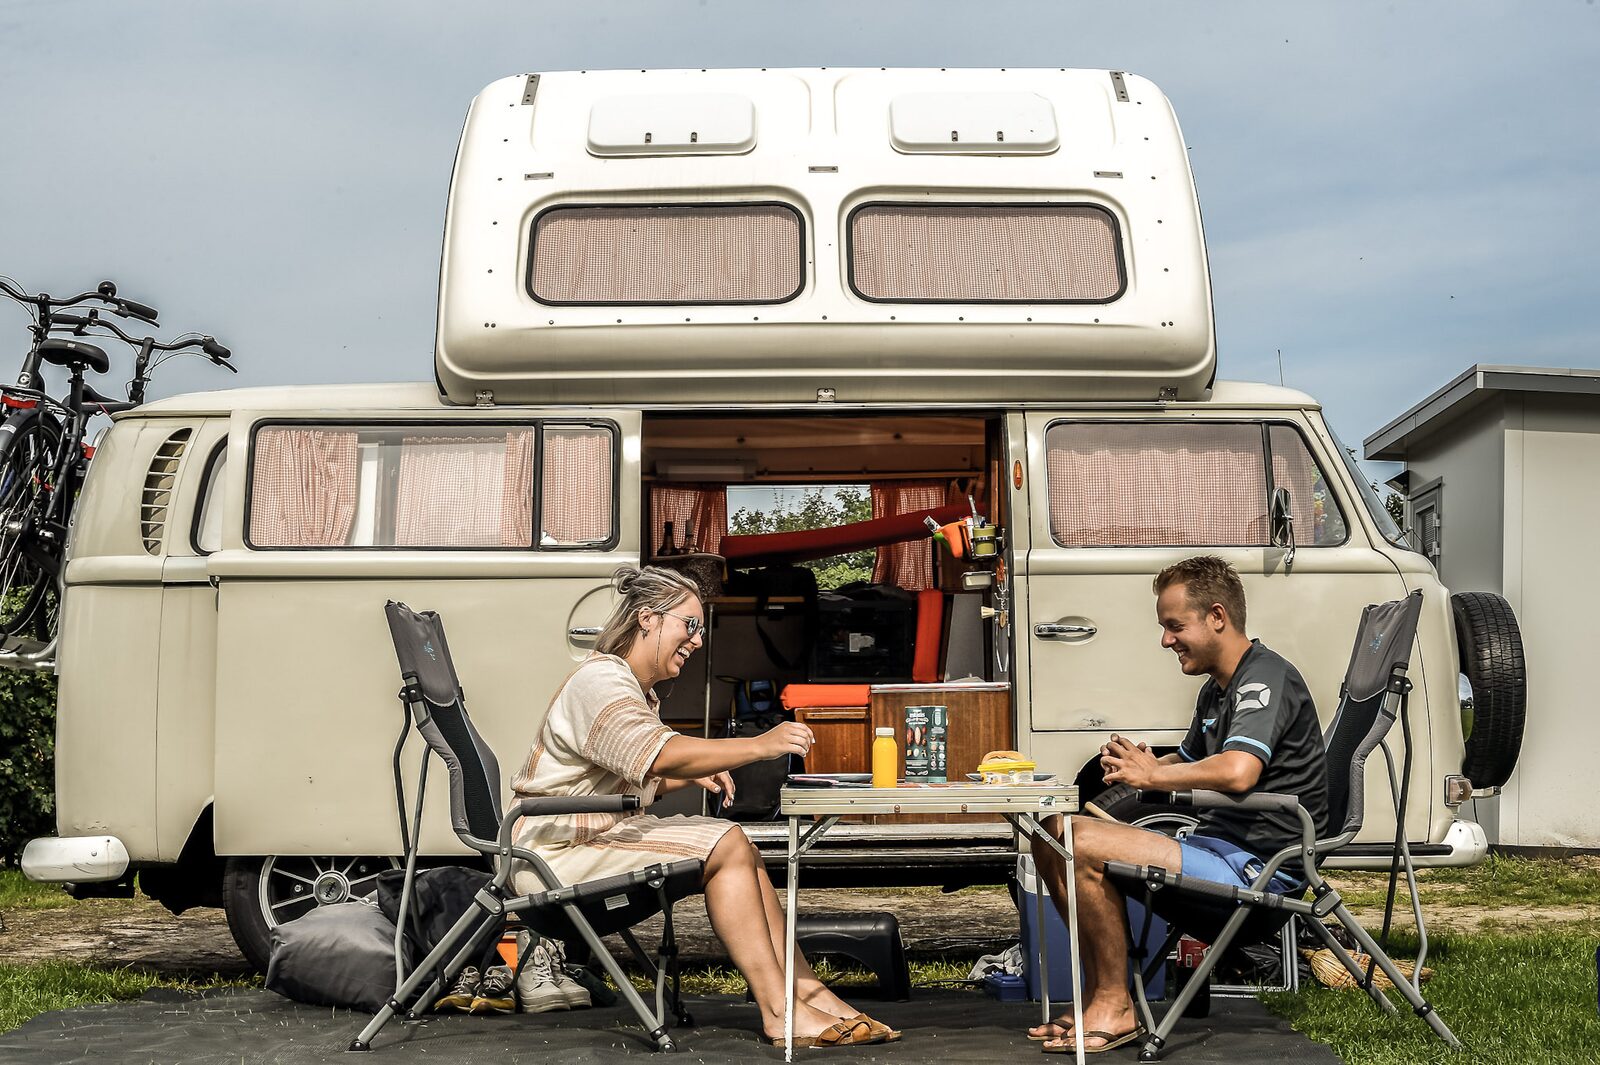 Entdecken Sie unseren 5-Sterne-Campingplatz